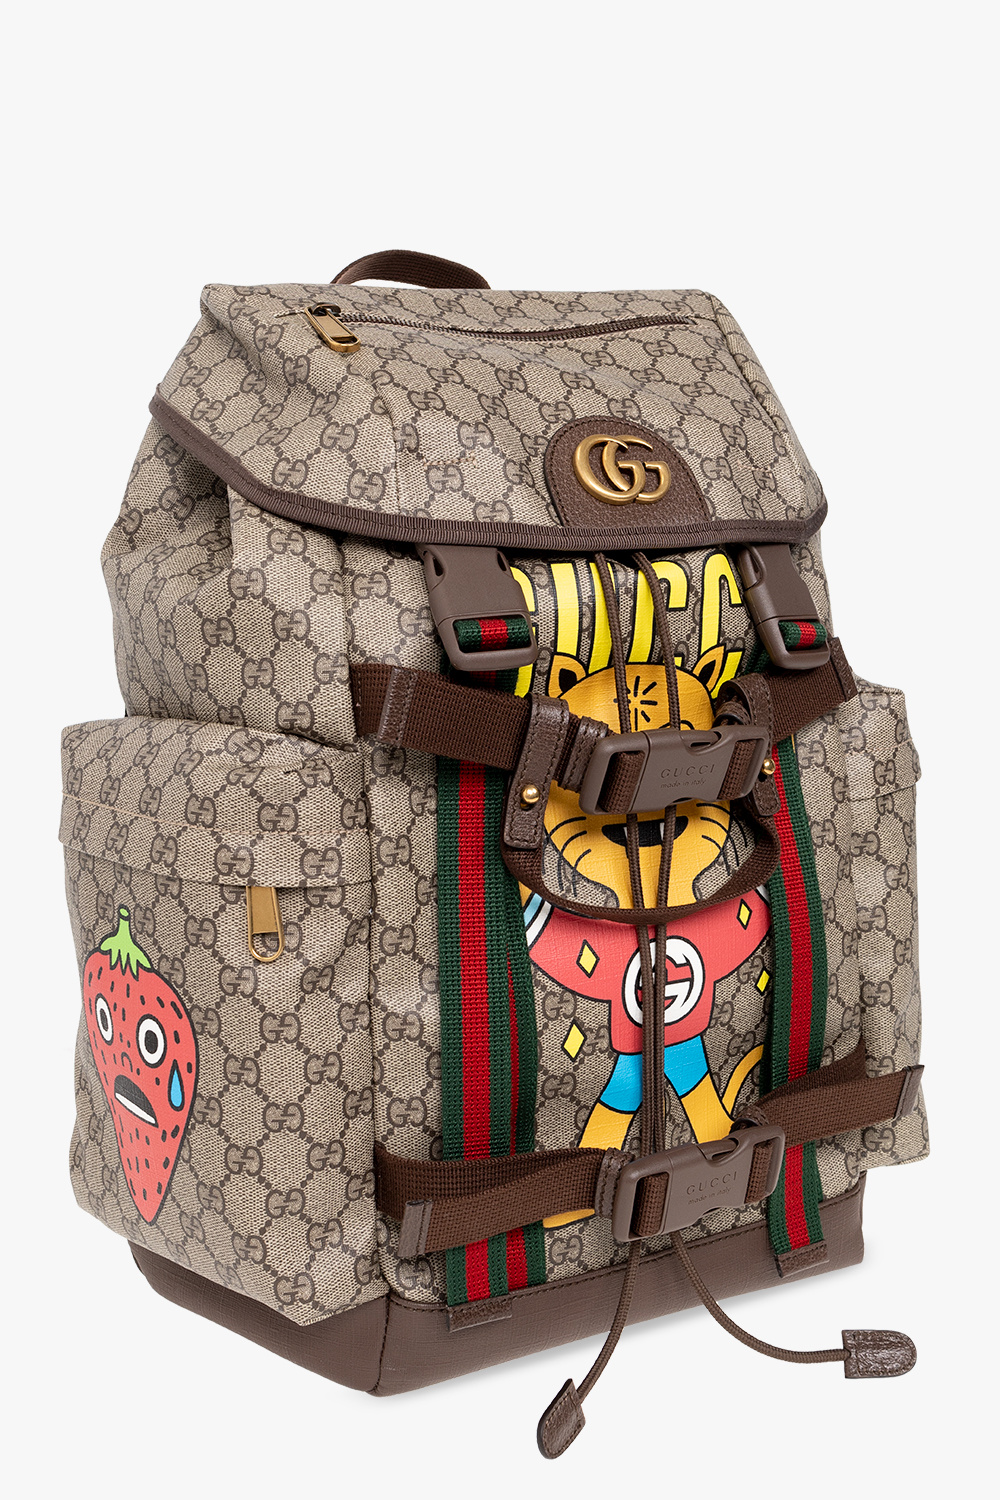 Gucci Gucci Pre-Owned 2000s small GG Canvas handbag